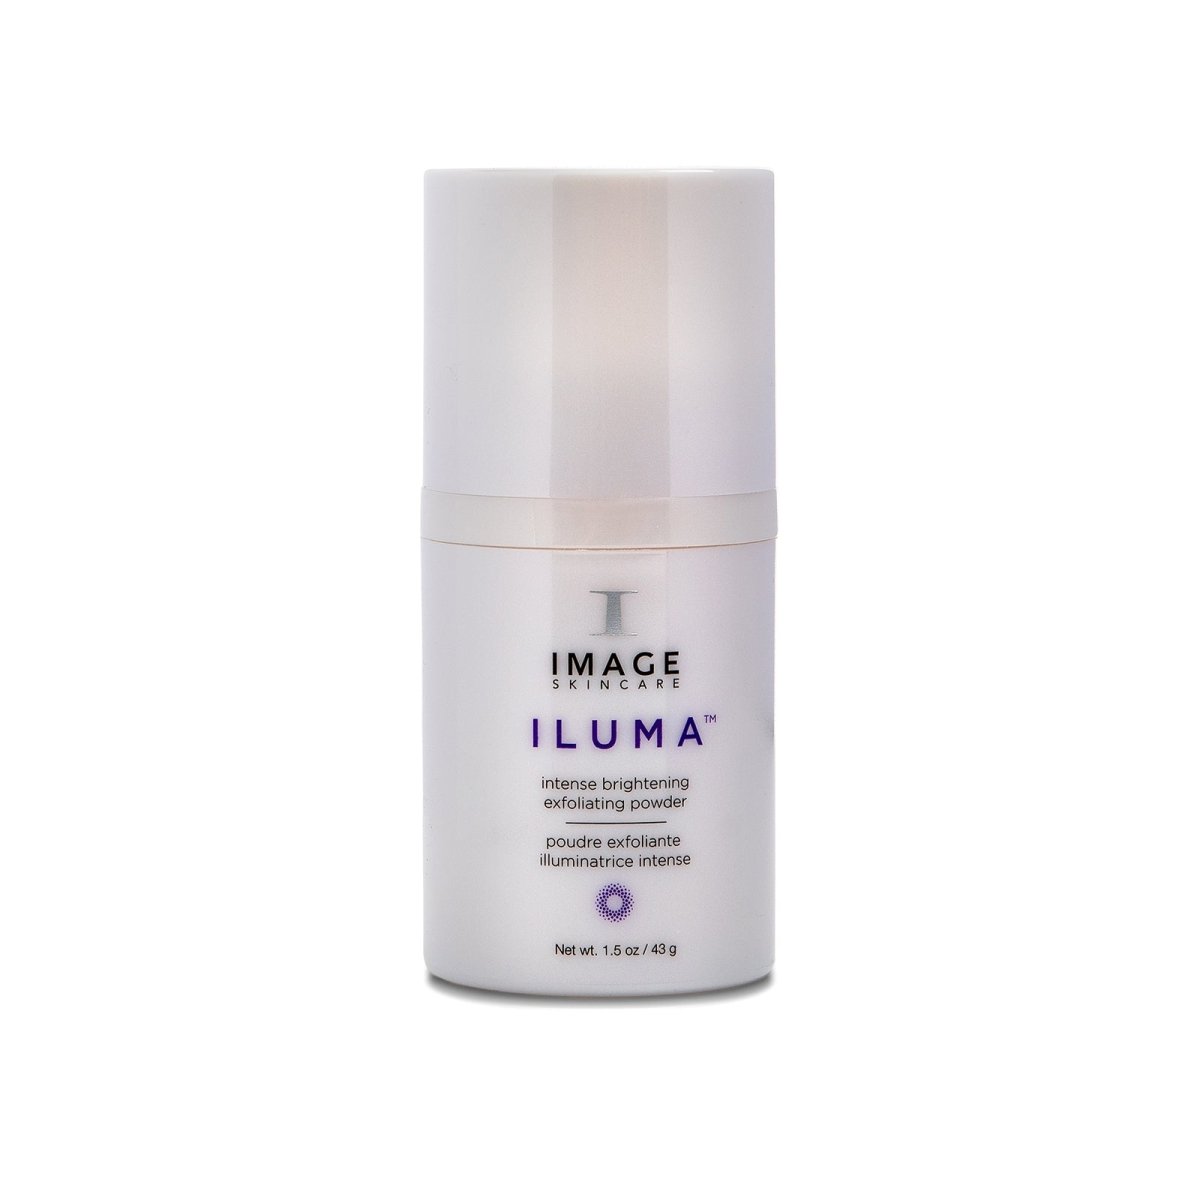 IMAGE Skincare ILUMA™ Intense Brightening Exfoliating Powder - SkincareEssentials